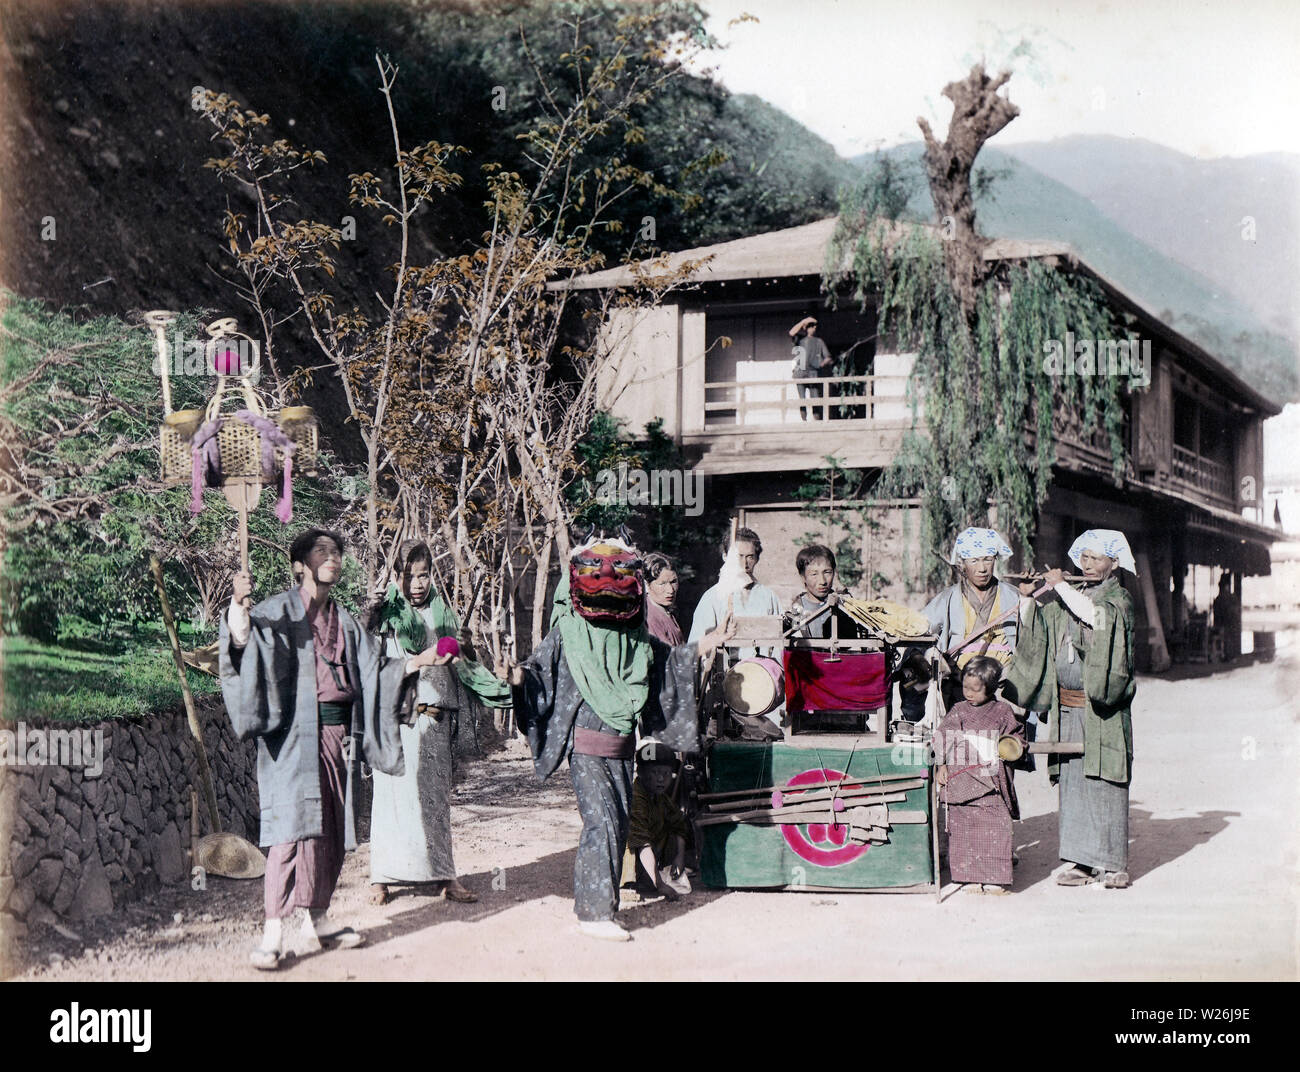 [ 1890 Giappone - Artisti di strada ] - artisti di strada su una strada del villaggio. Xix secolo albume vintage fotografia. Foto Stock